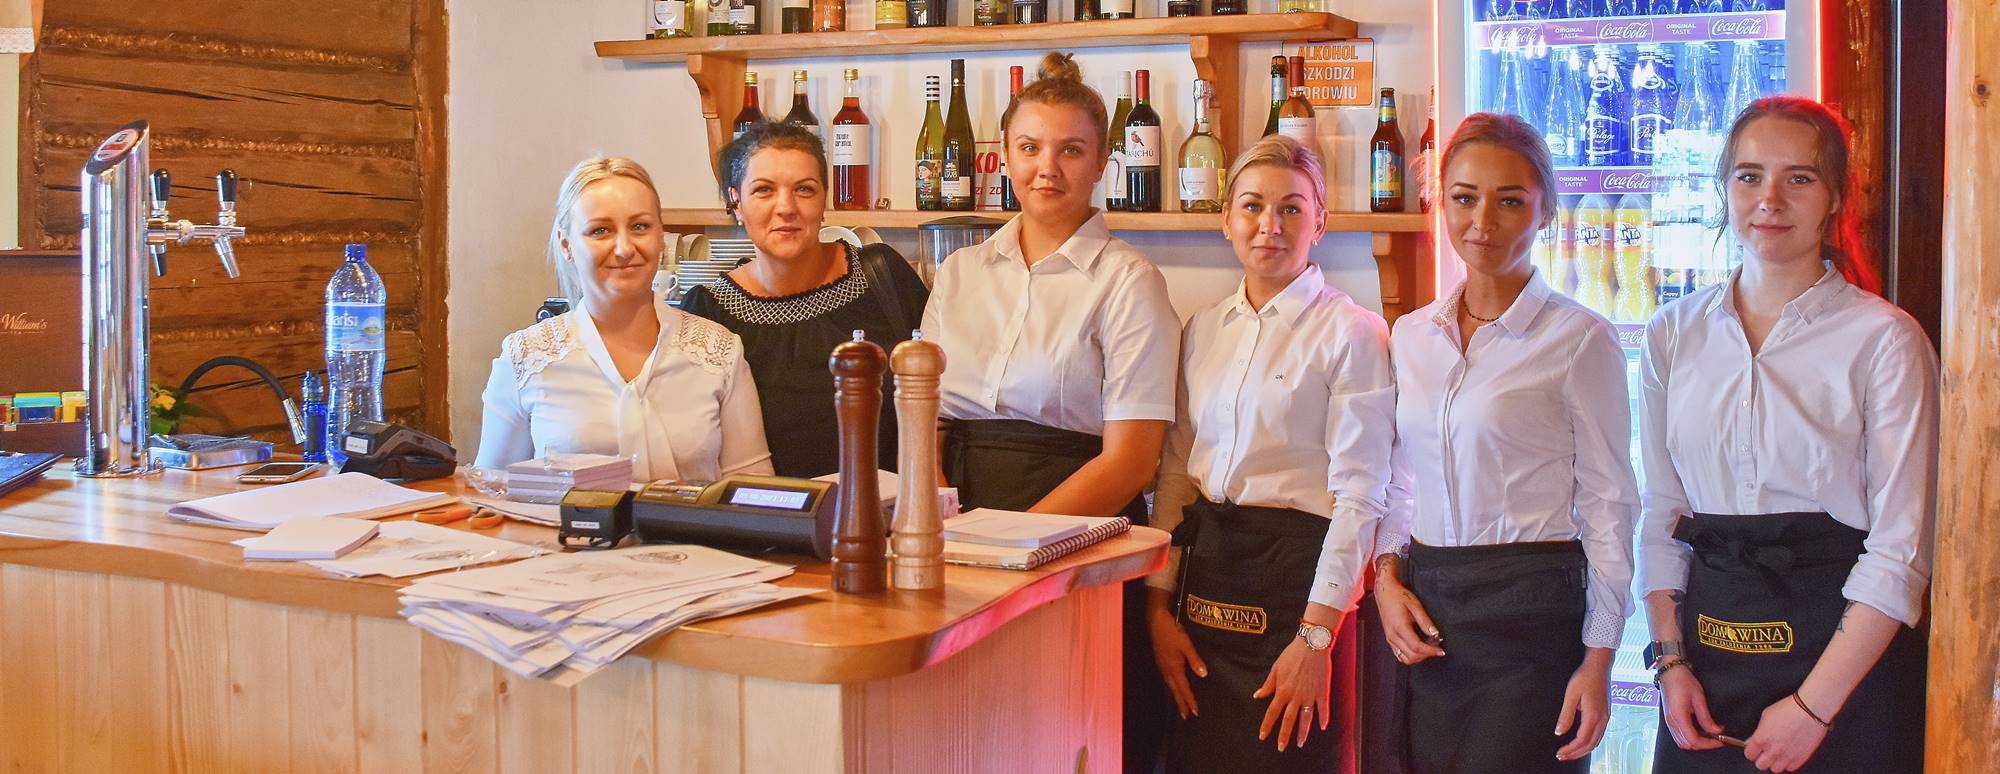 Wspólne zdjęcie załogi restauracji Austeria w Sławkowie